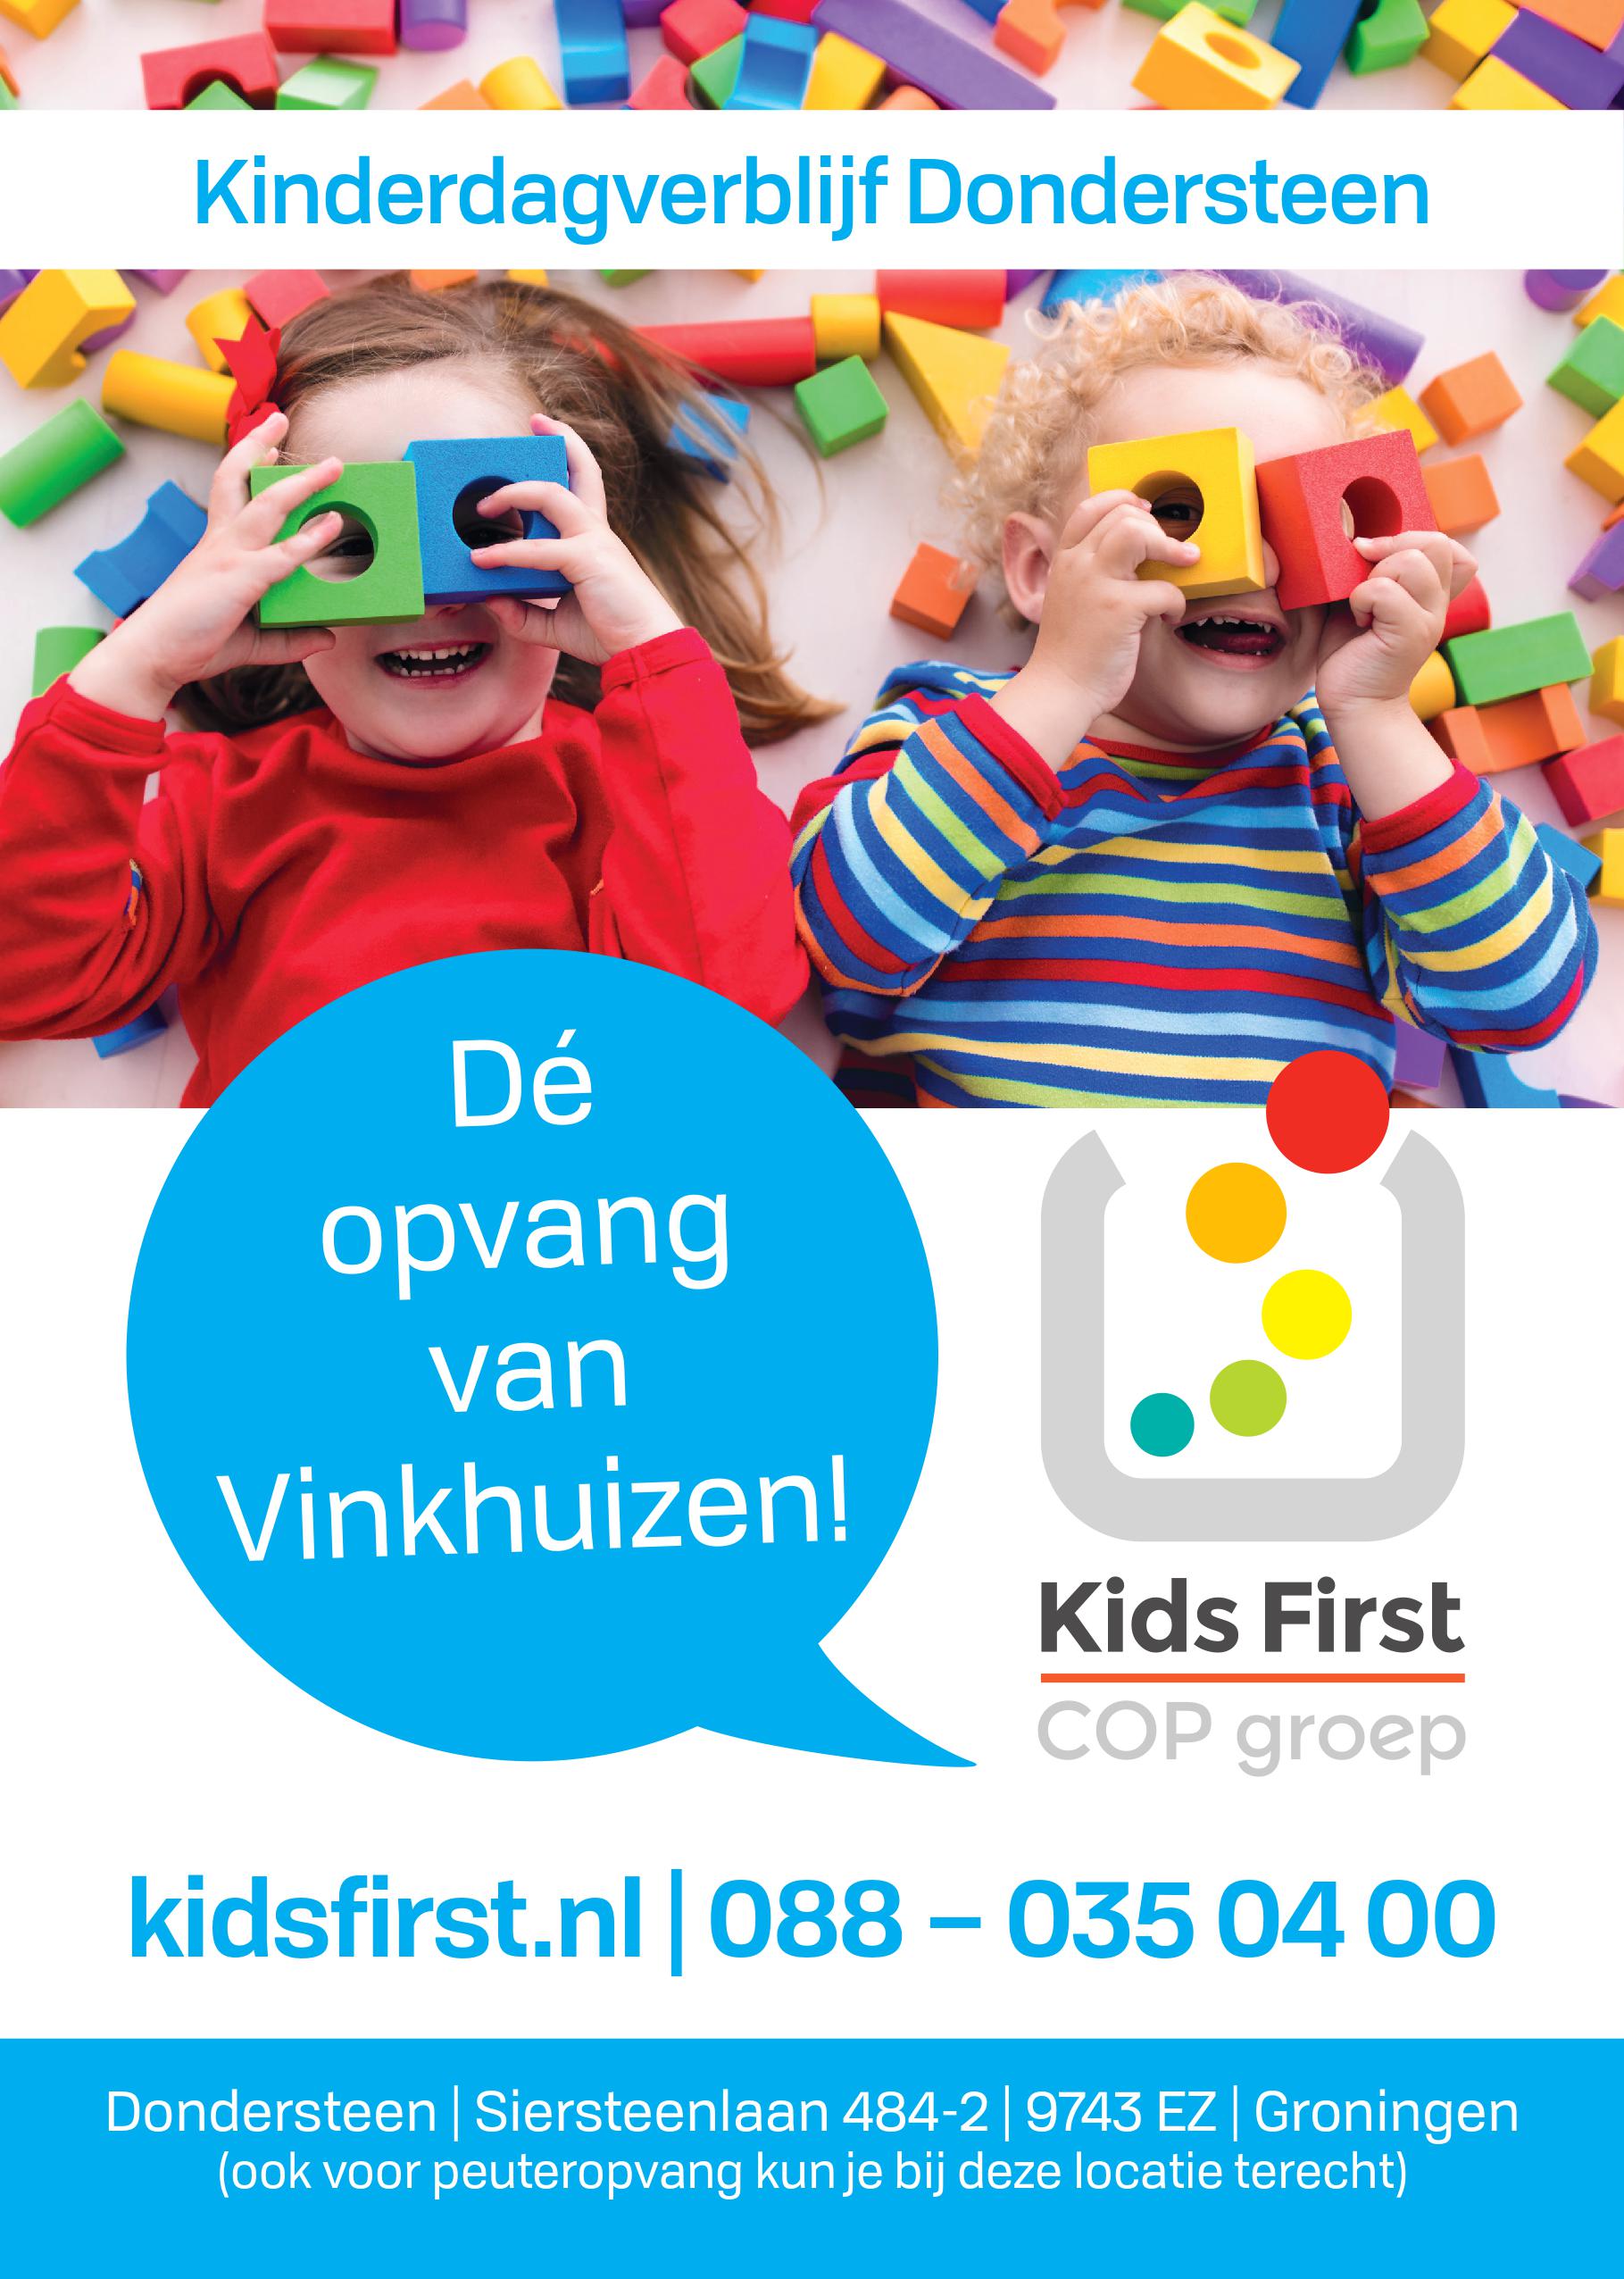 Kinderdagverblijf Dondersteen Groningen - Kids First COP Groep